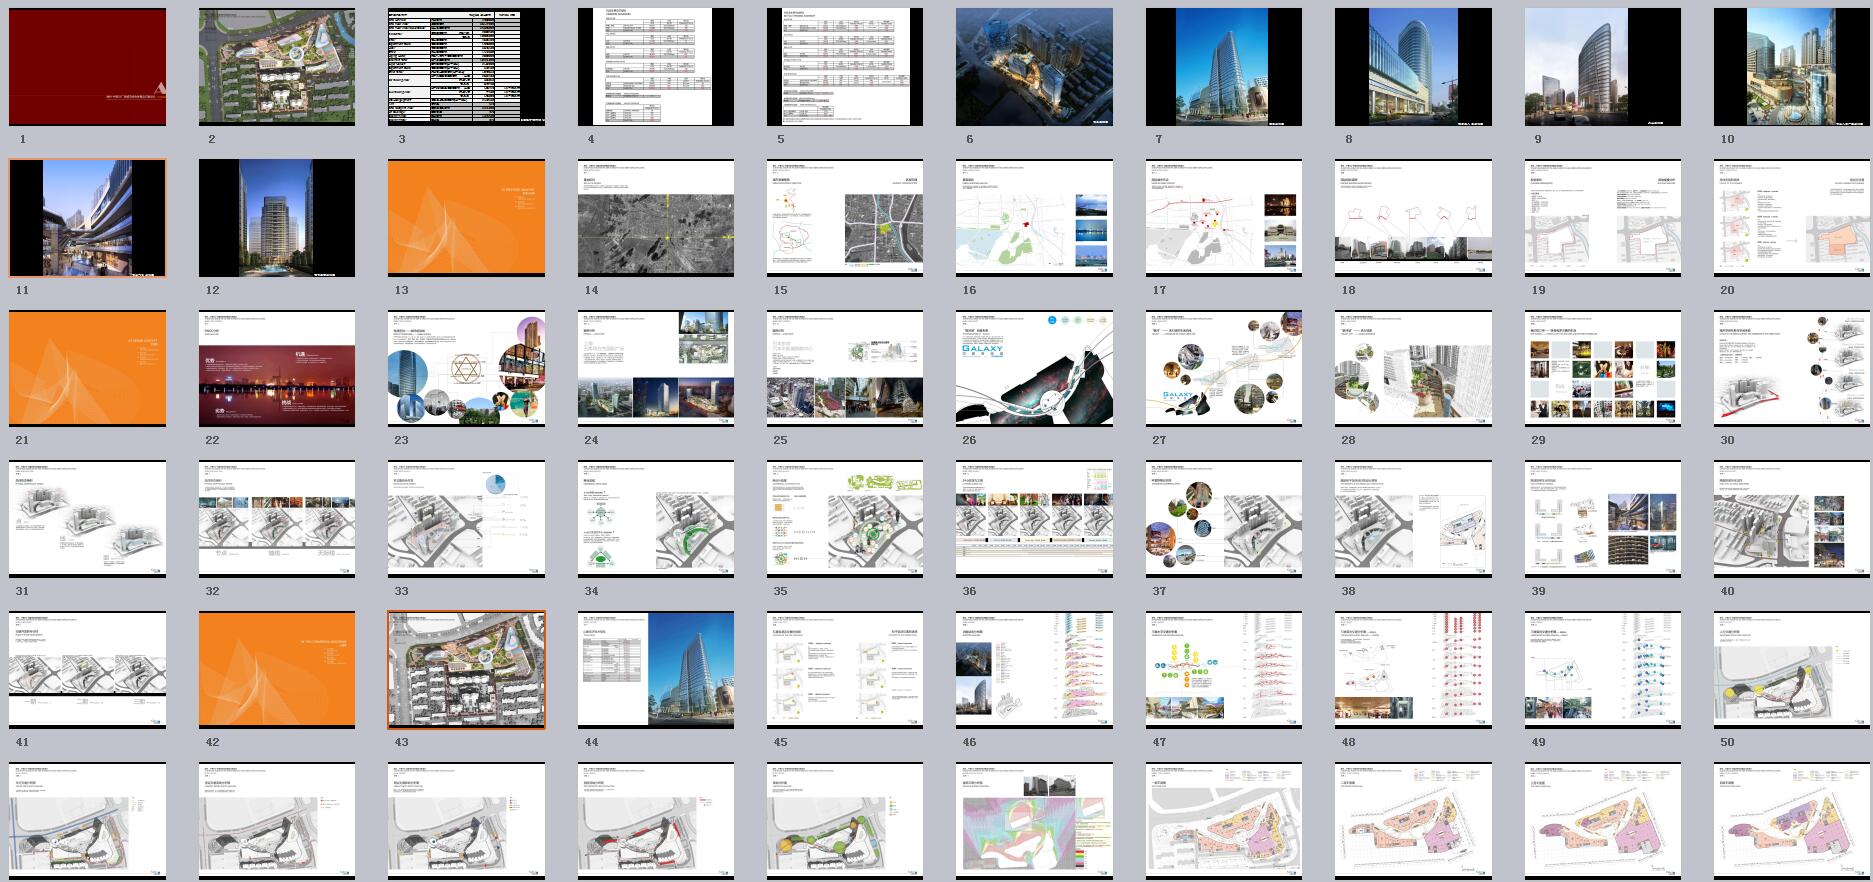 064 徐州广场城市综合体概念设计方案文本-4